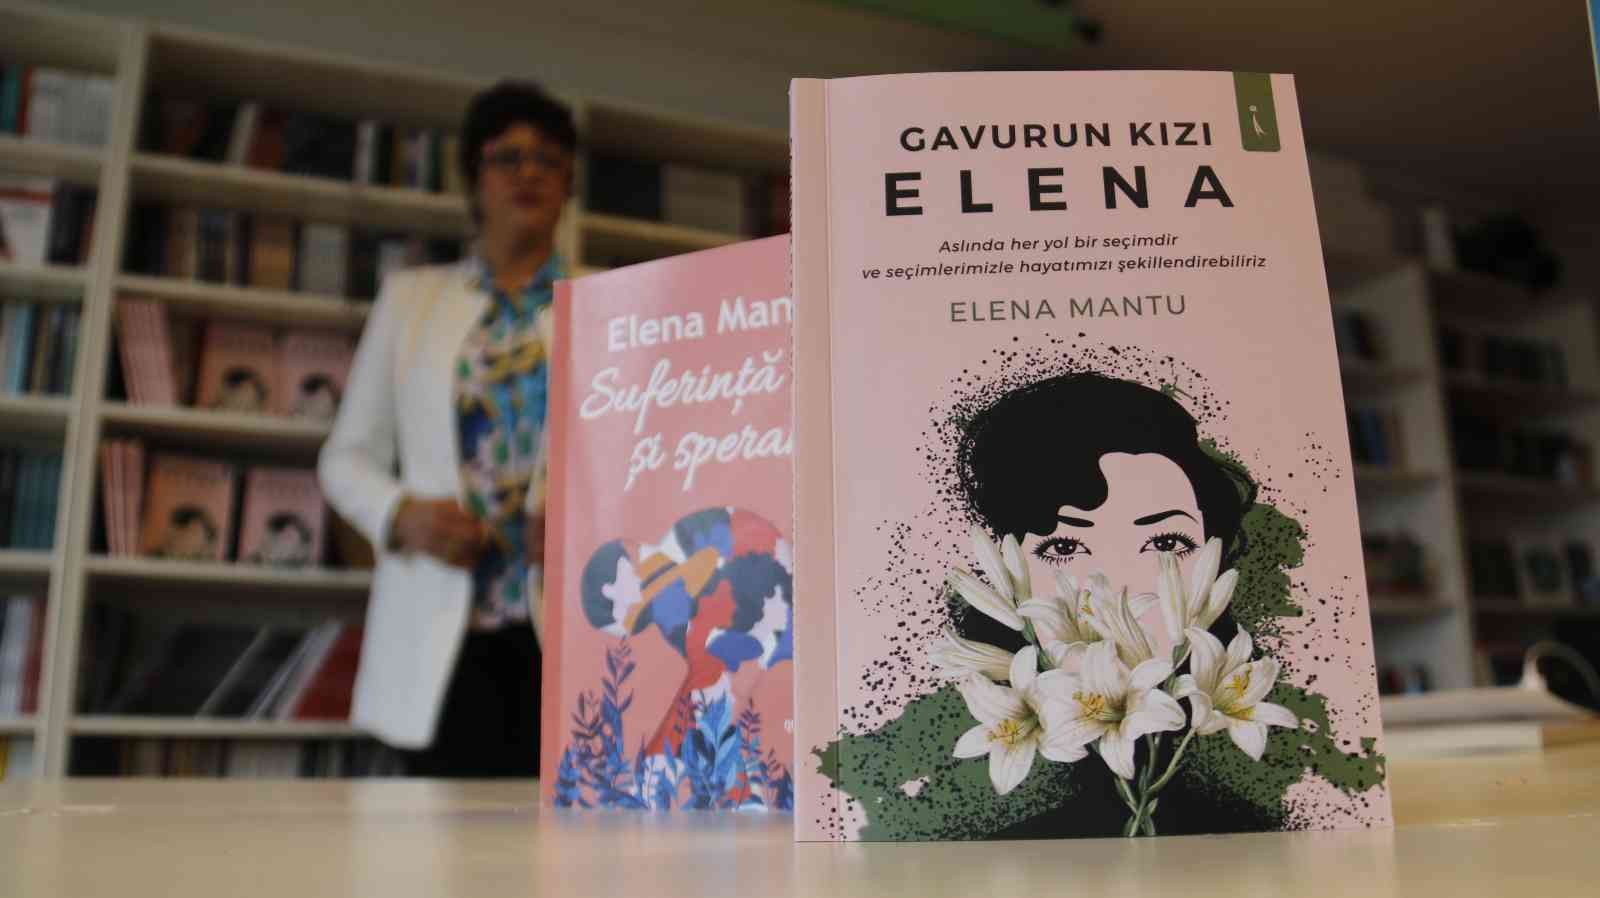 8 Mart Dünya Kadınlar Günü’nde Elena Mantu kaleme aldığı “Gavurun Kızı Elena” isimli kitabında ev hanımlığından yazarlığa uzanan yolculuğunu ...